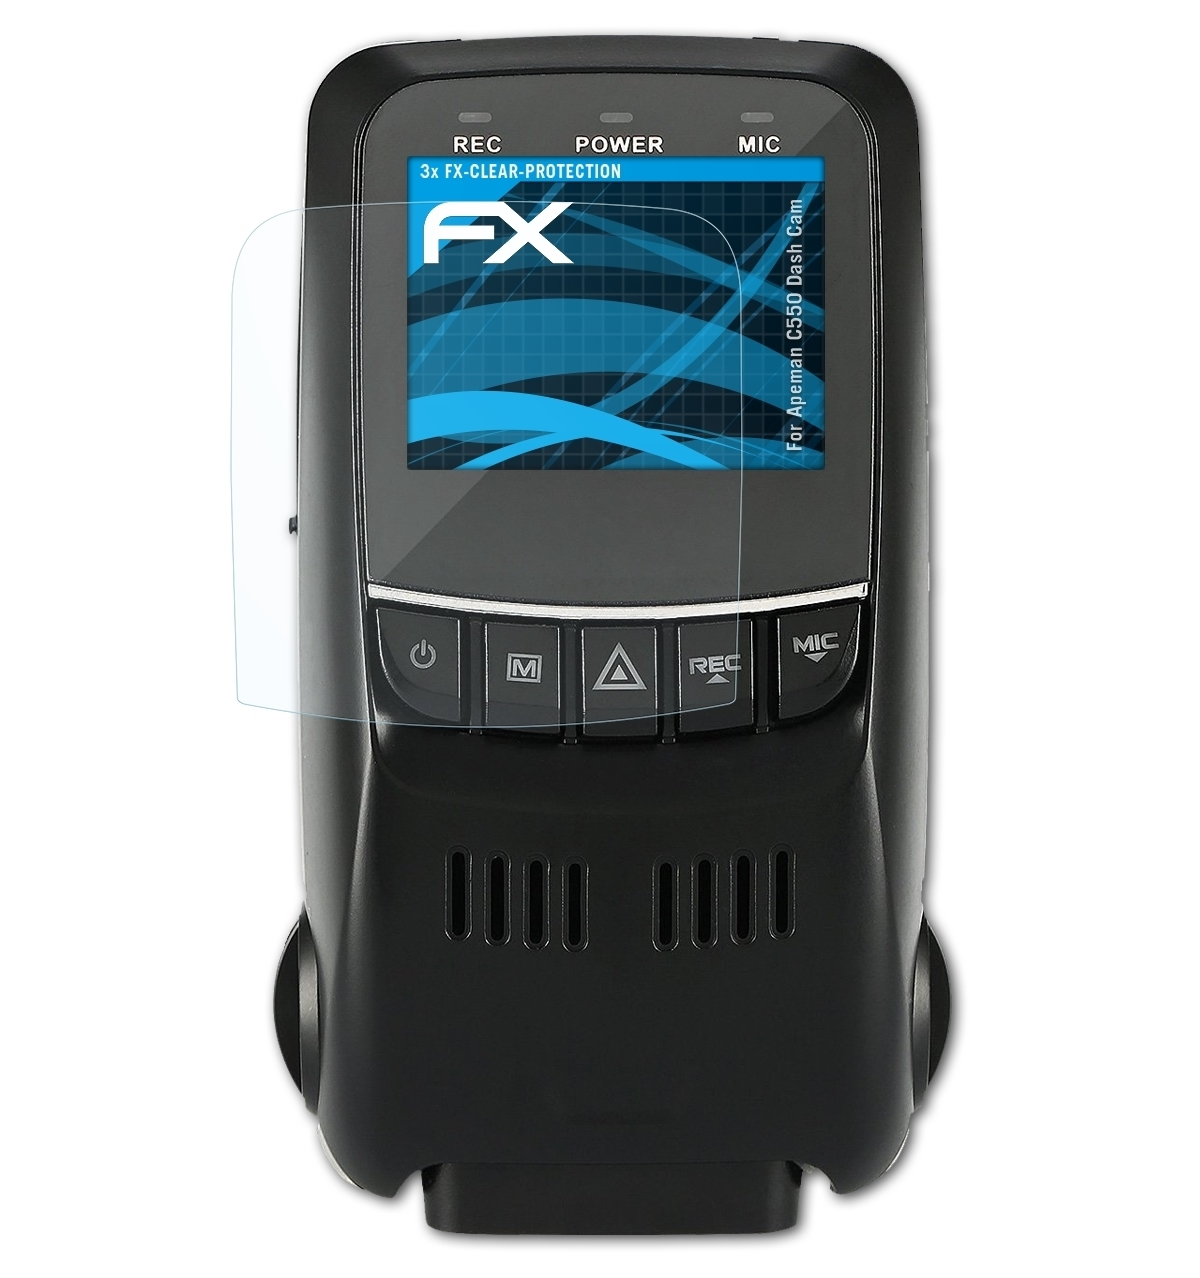 ATFOLIX 3x FX-Clear Displayschutz(für Cam)) Apeman C550 (Dash